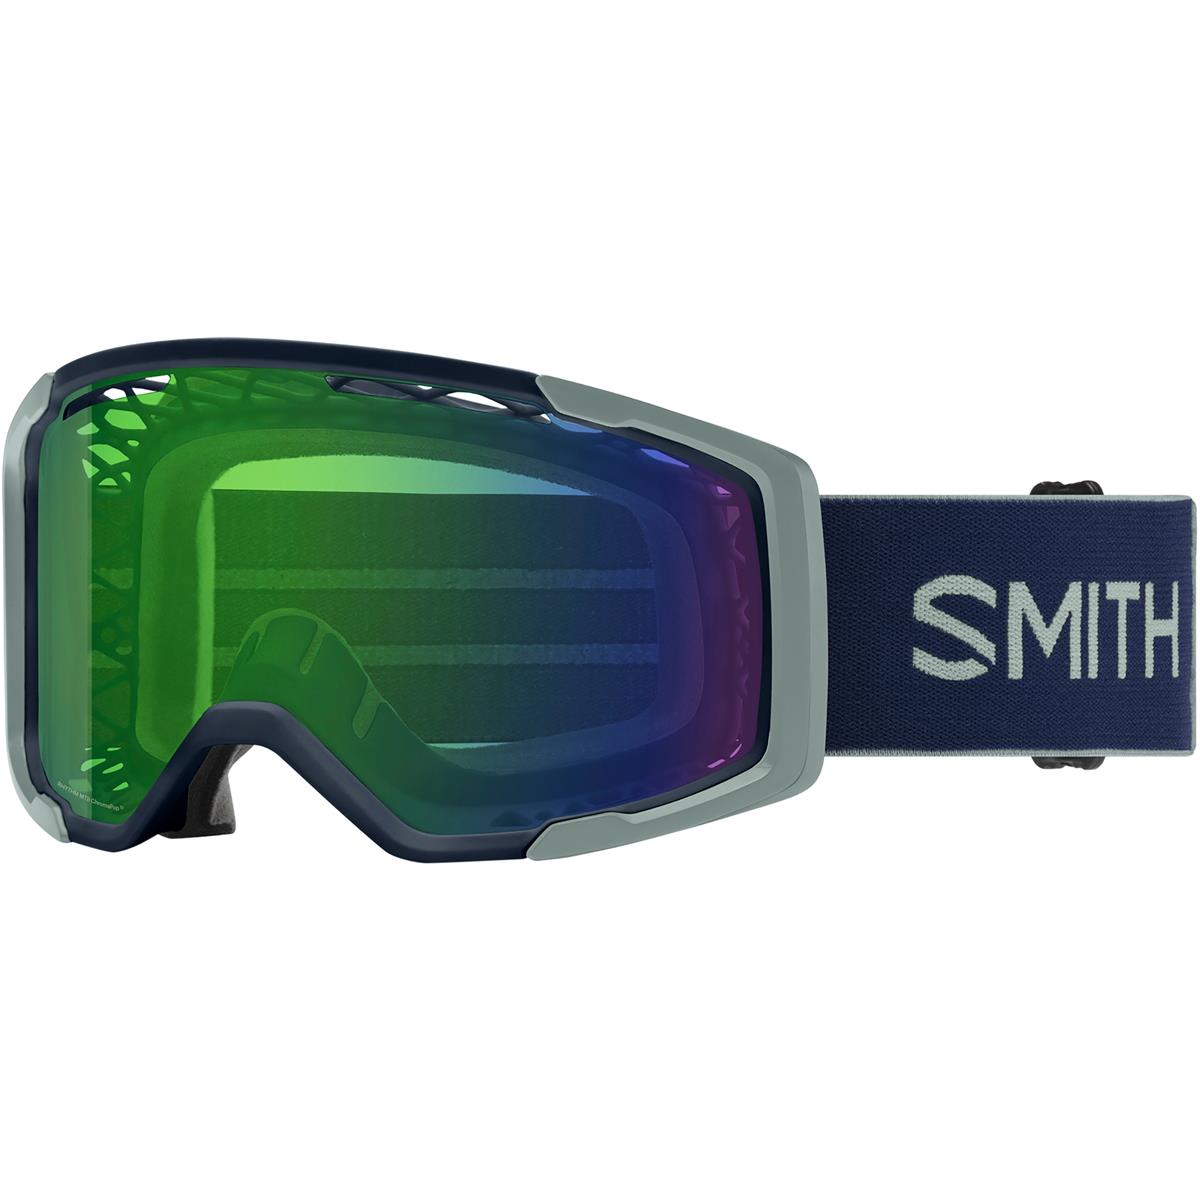 Smith Masque VTT Rhythm MTB Midnight Navy/Sage Brush - Chromapop Everyday Green Mirror